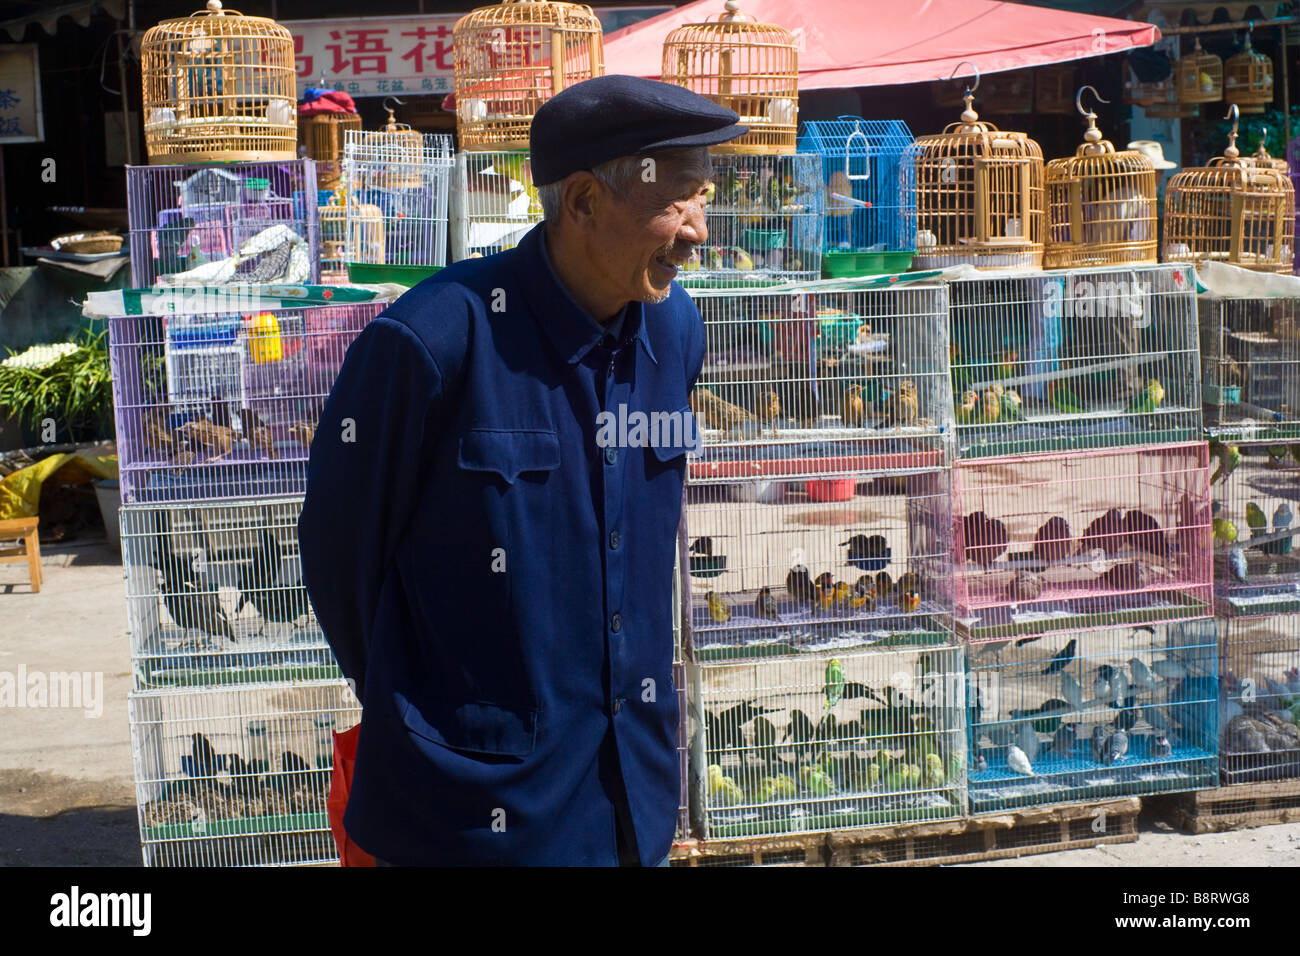 Marchand d'oiseaux en uniforme de Mao au marché de Lijiang, Chine Banque D'Images